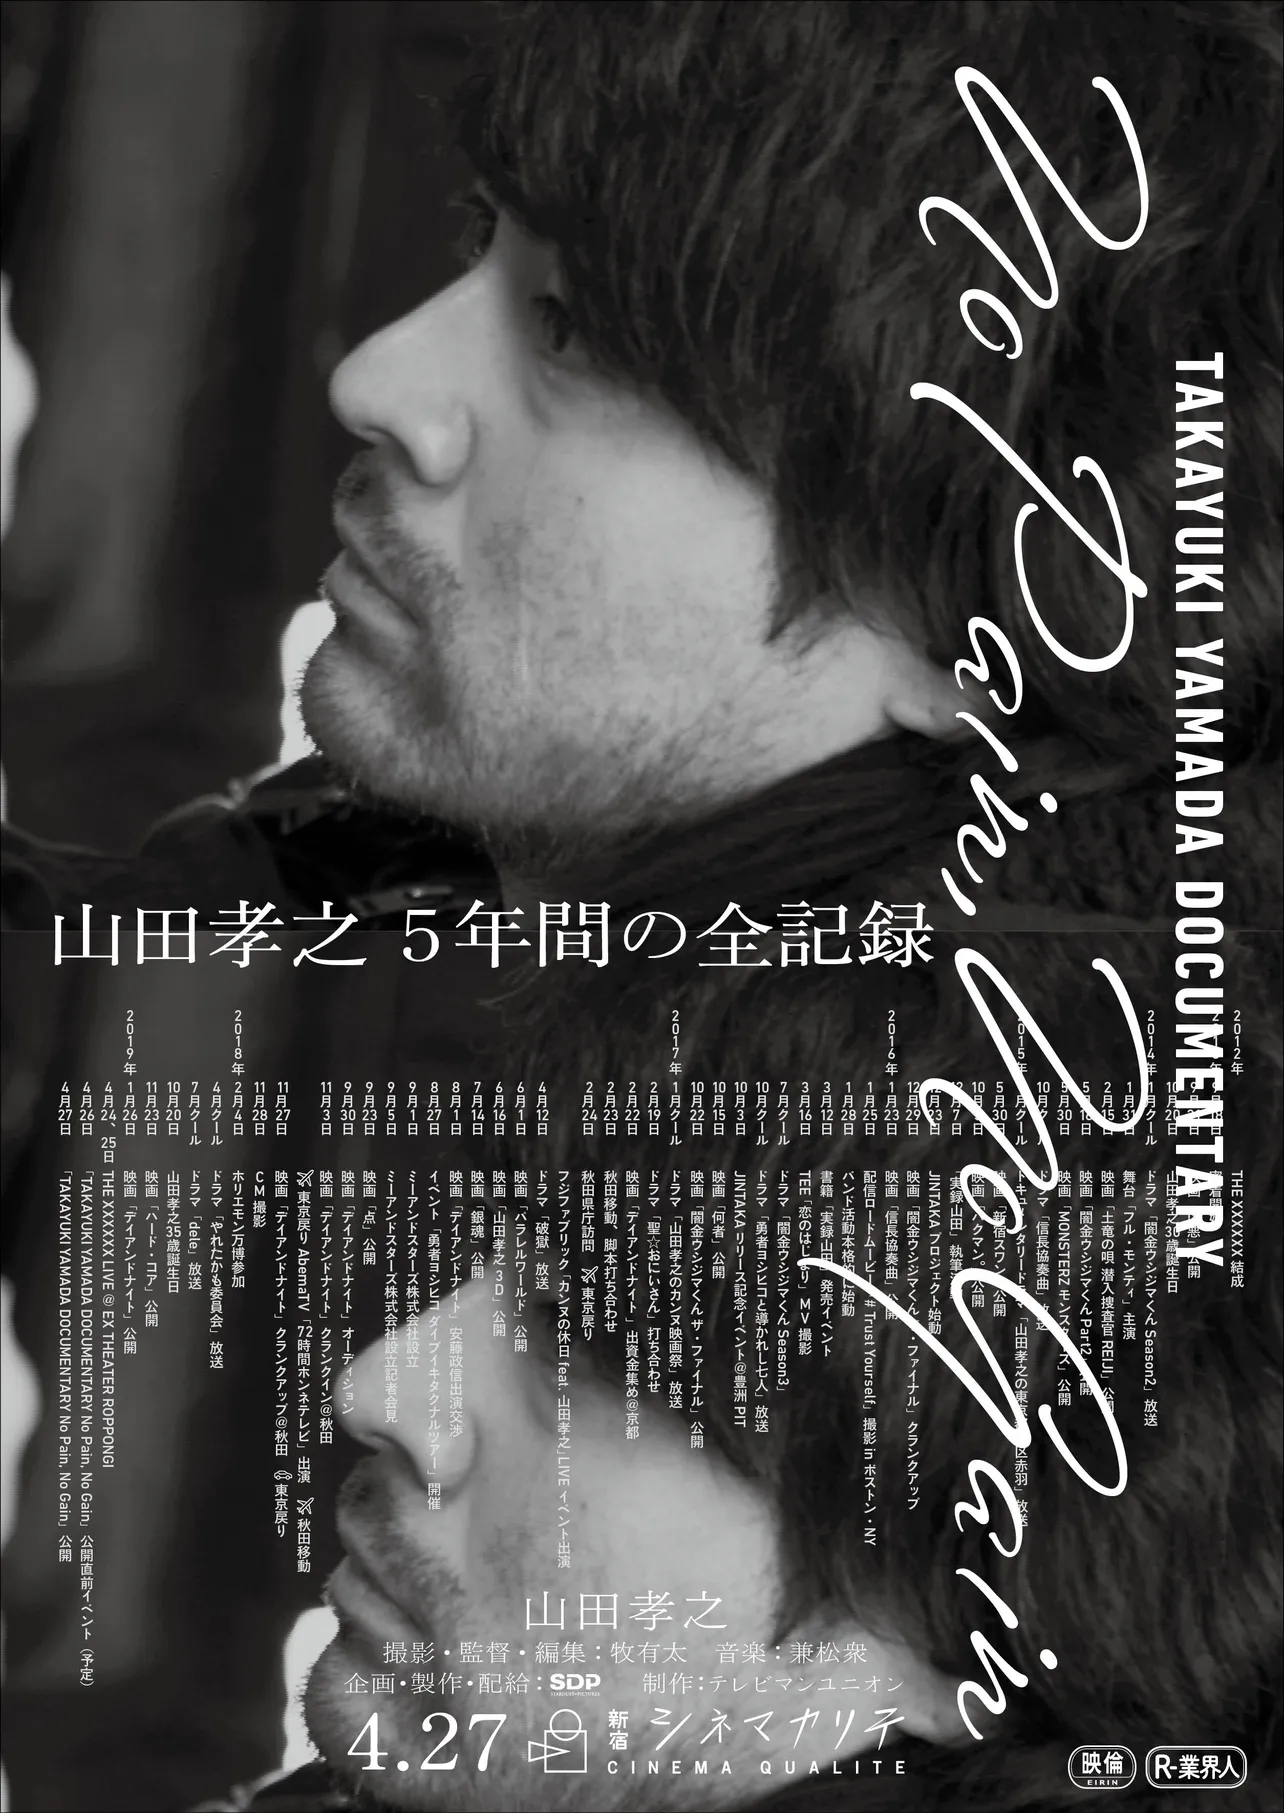 4月27日から、新宿シネマカリテのみで上映された山田孝之に密着したリアルドキュメンタリー映画「TAKAYUKI YAMADA DOCUMENTARY『No Pain, No Gain』」